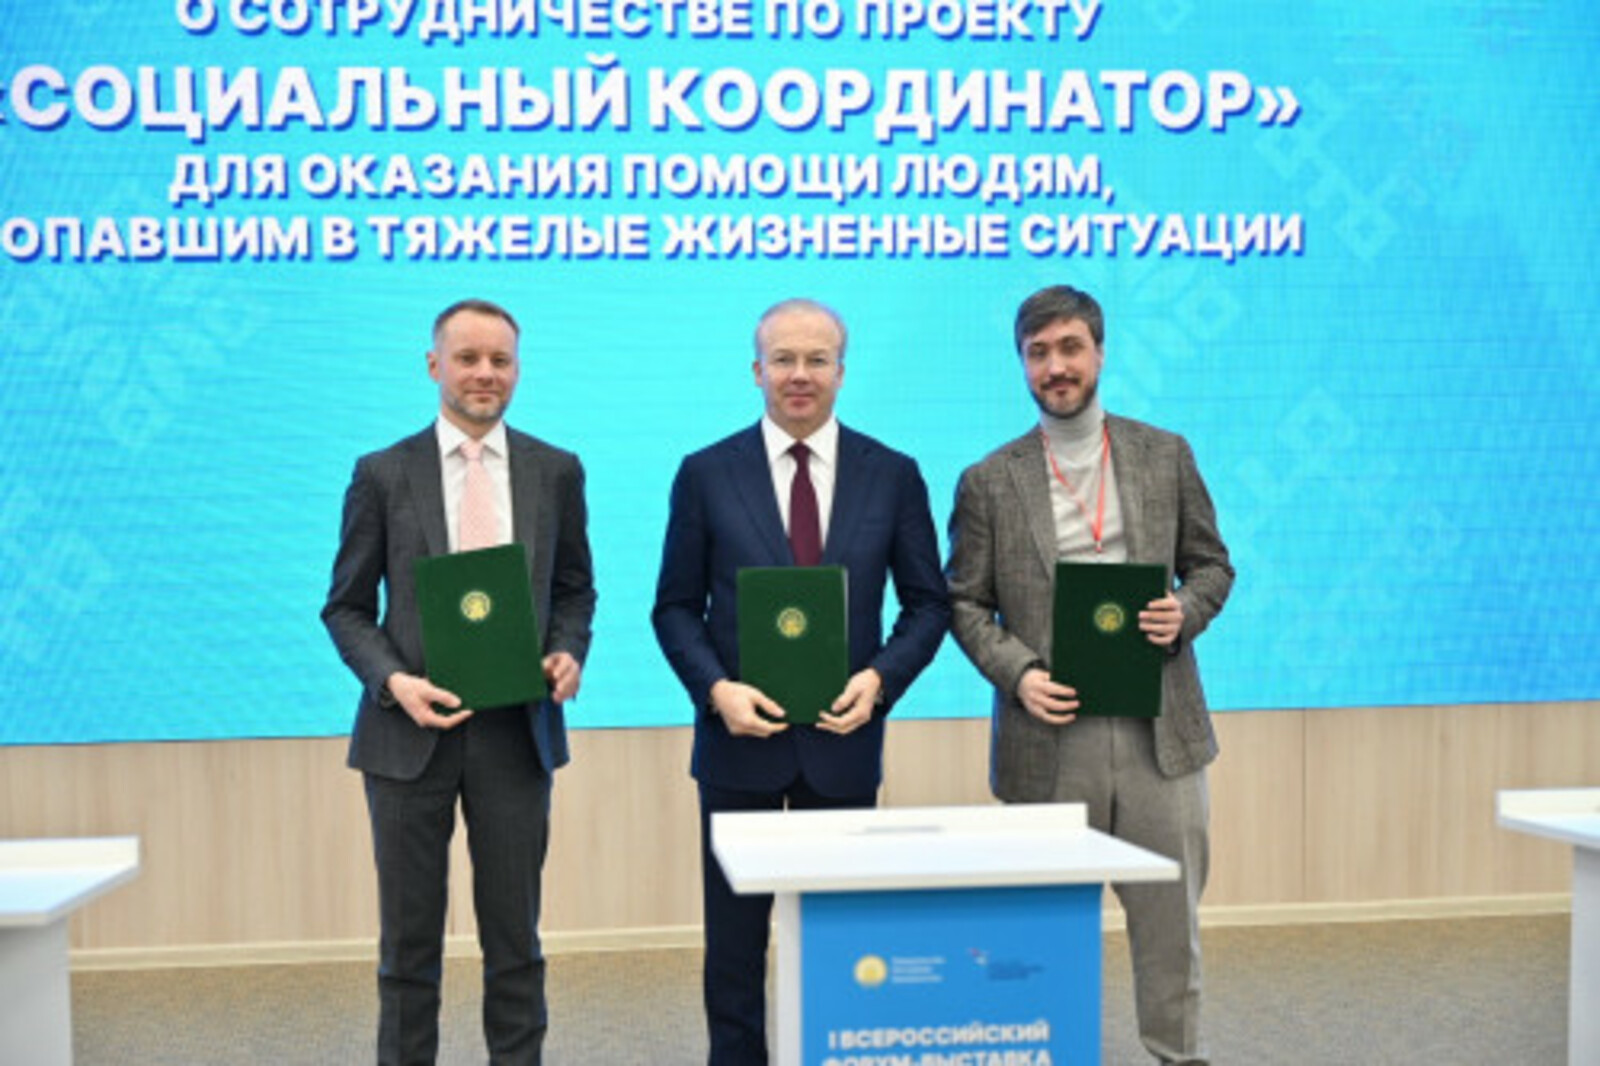 На I Всероссийском форуме-выставке «Ломая барьеры» Андрей Назаров подписал Соглашение о сотрудничестве по проекту «Социальный координатор»